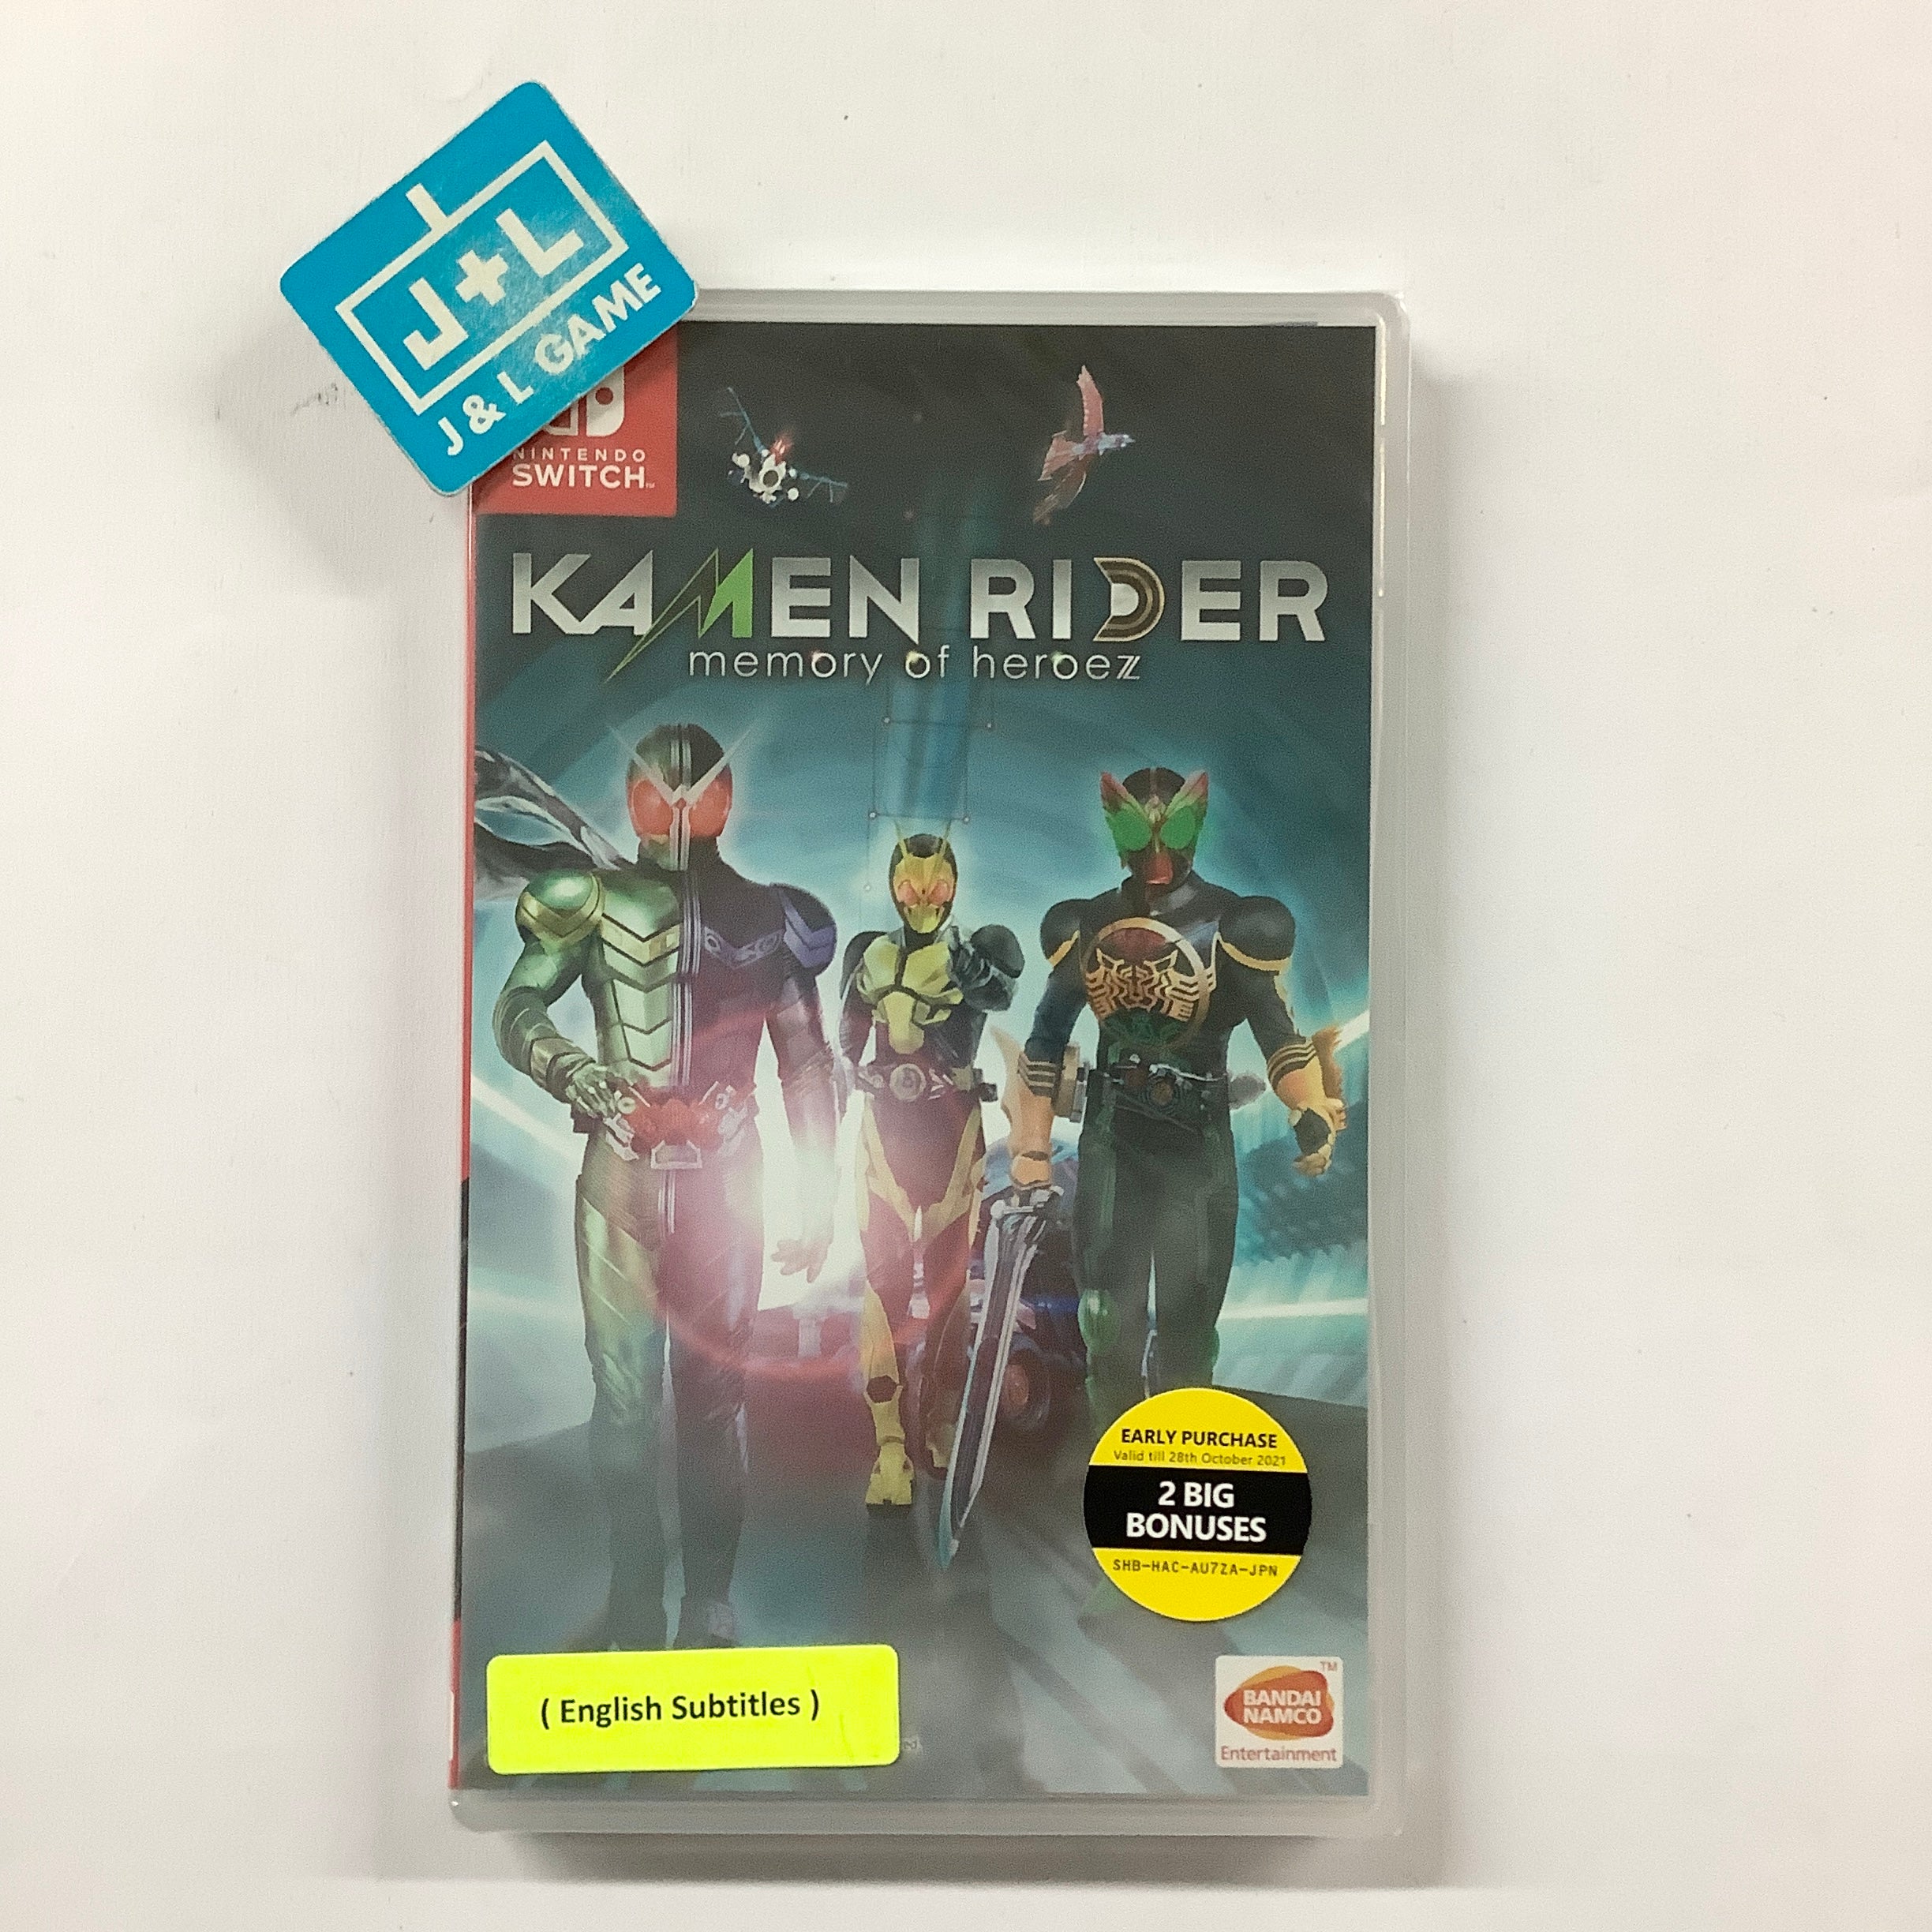 Kamen Rider: Memory of Heroez - (NSW) Nintendo Switch (Japanese Import) Video Games Bandai Namco Games   